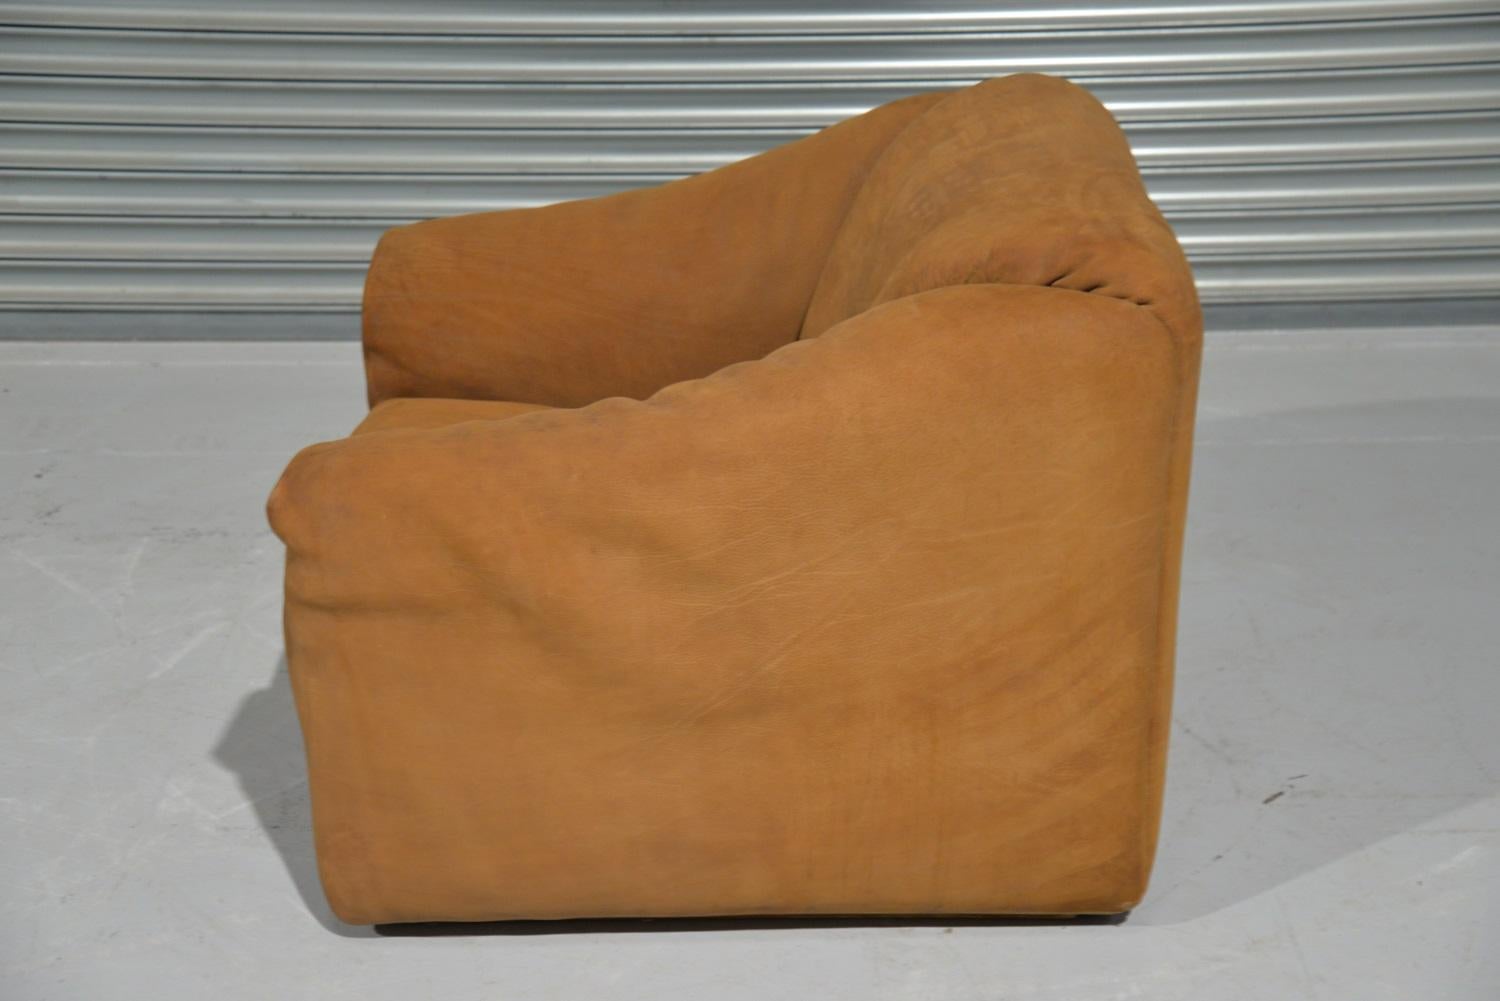 Vintage De Sede DS 47 Leather Armchair, Switzerland, 1970s For Sale 2